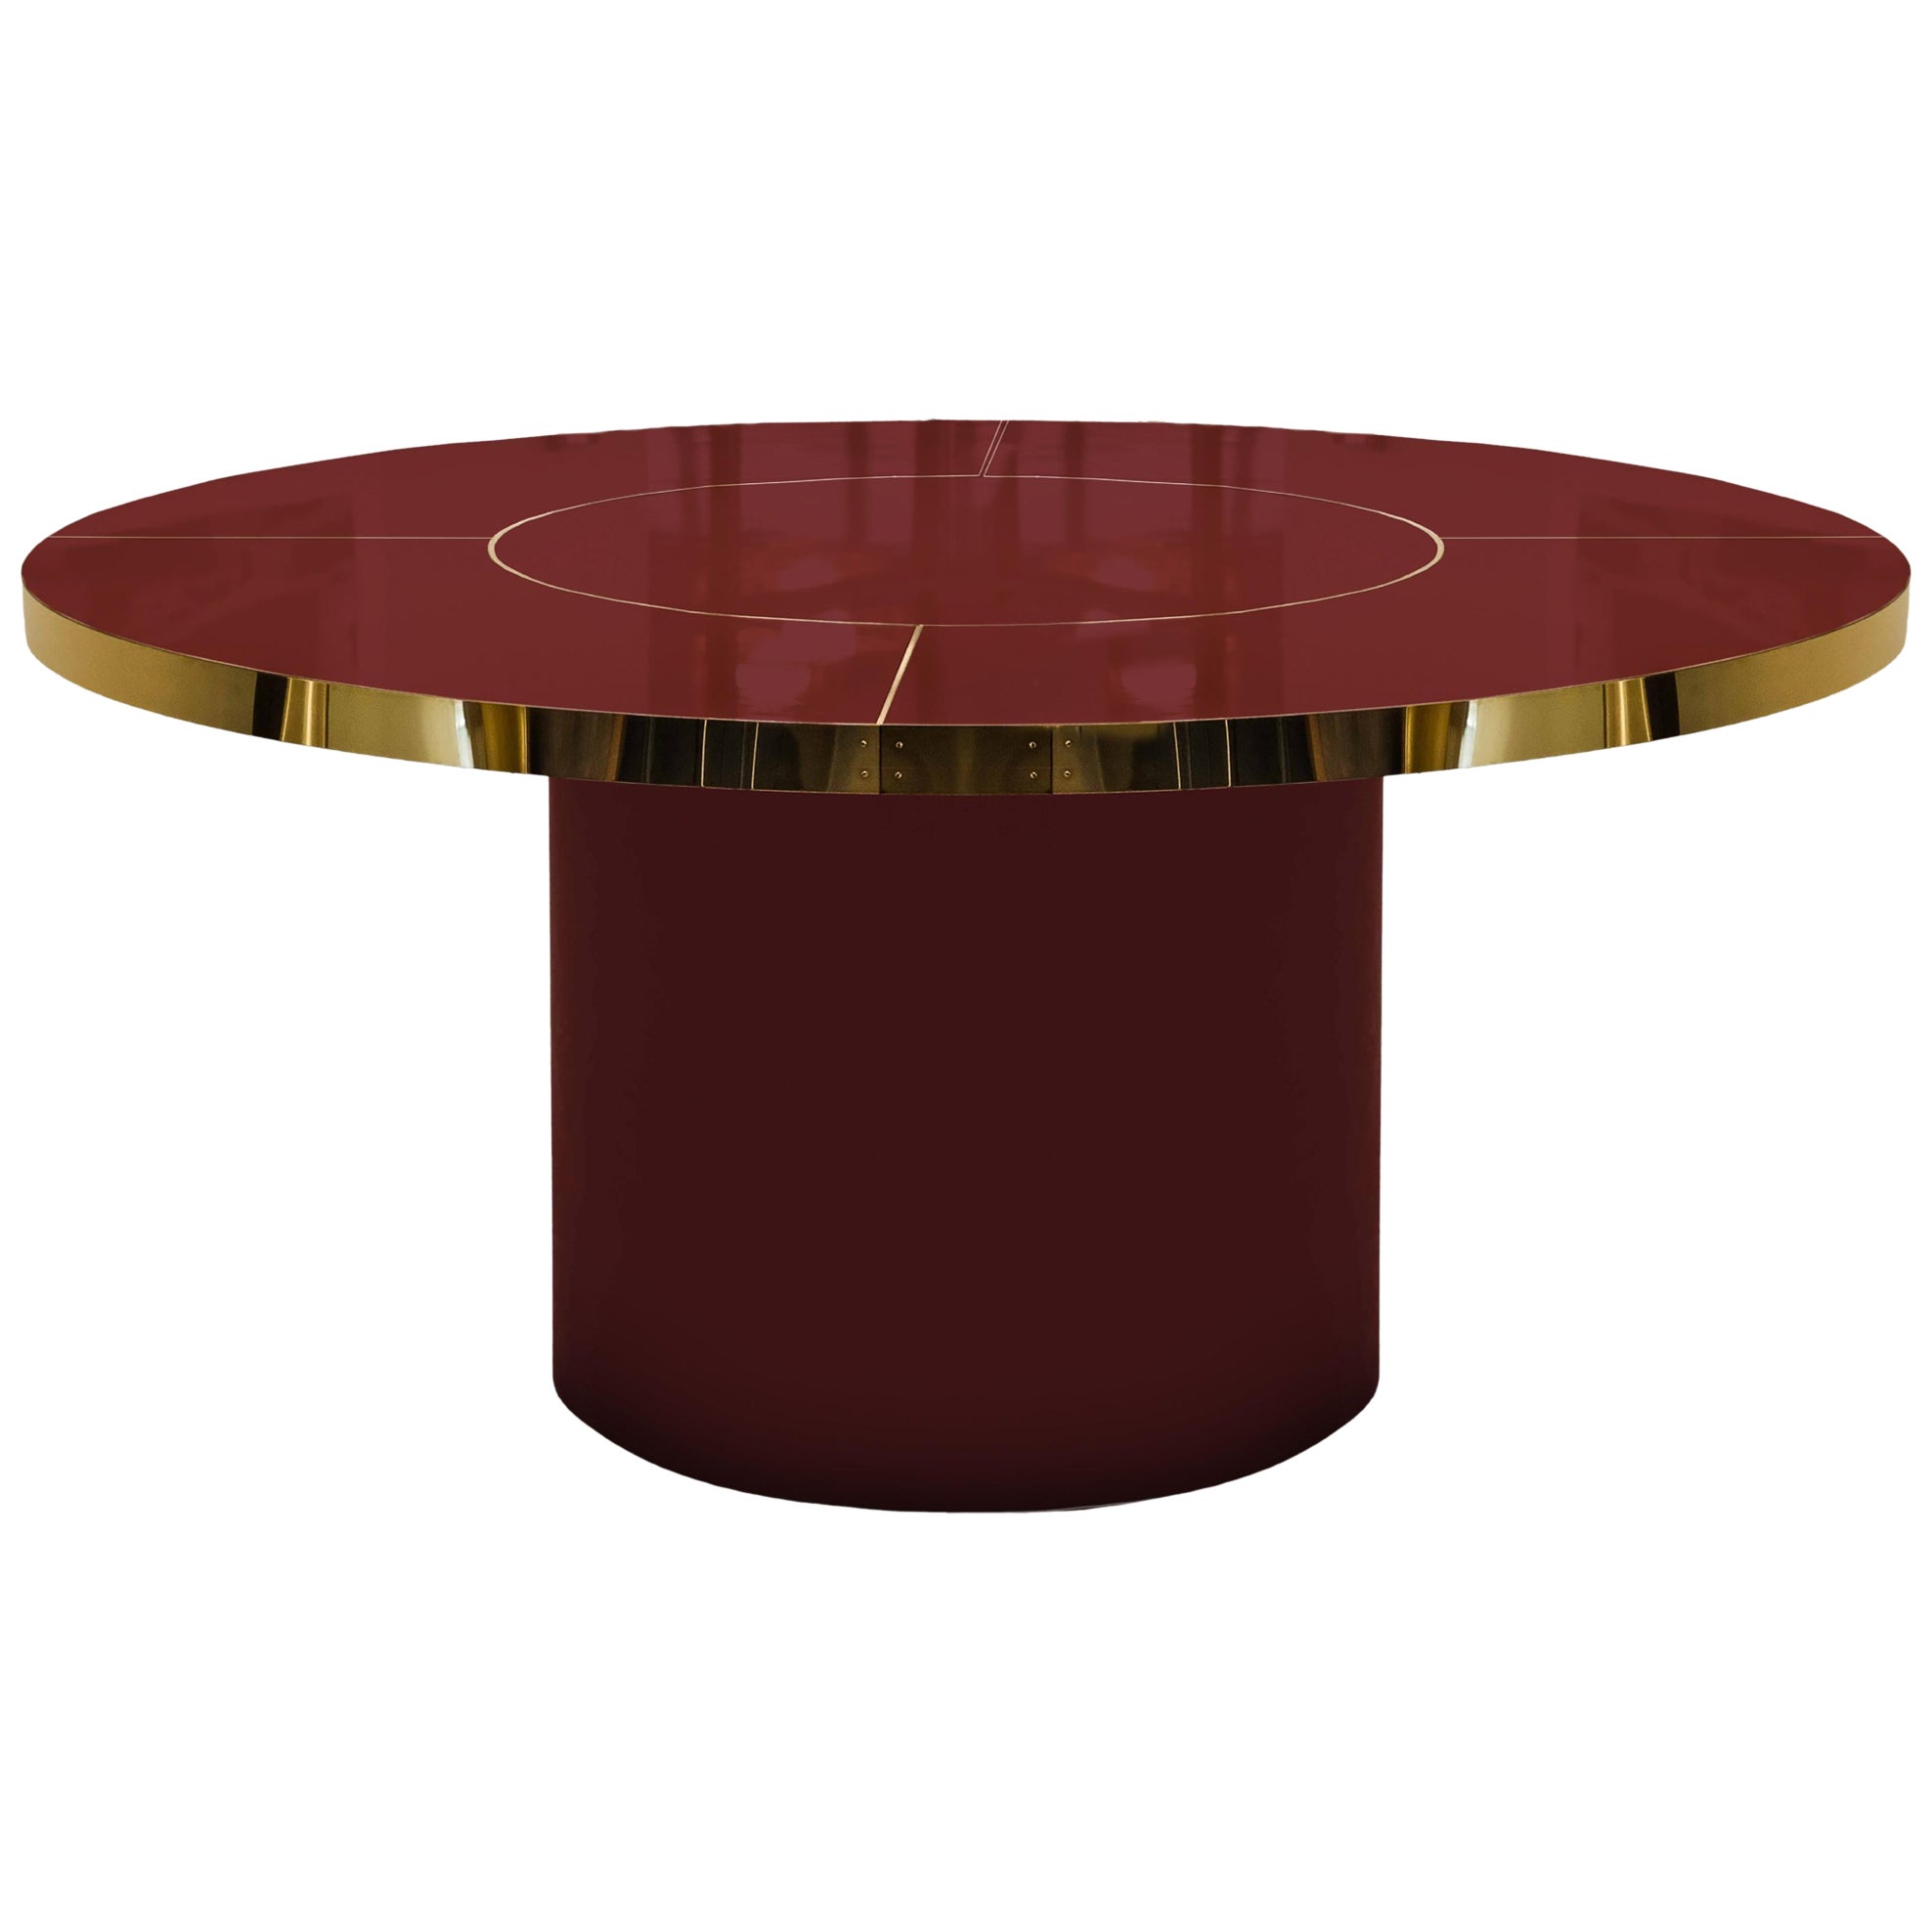 Runder Tisch in Burgunderrot aus hochglänzendem Laminat und Messing mit Intarsien, L